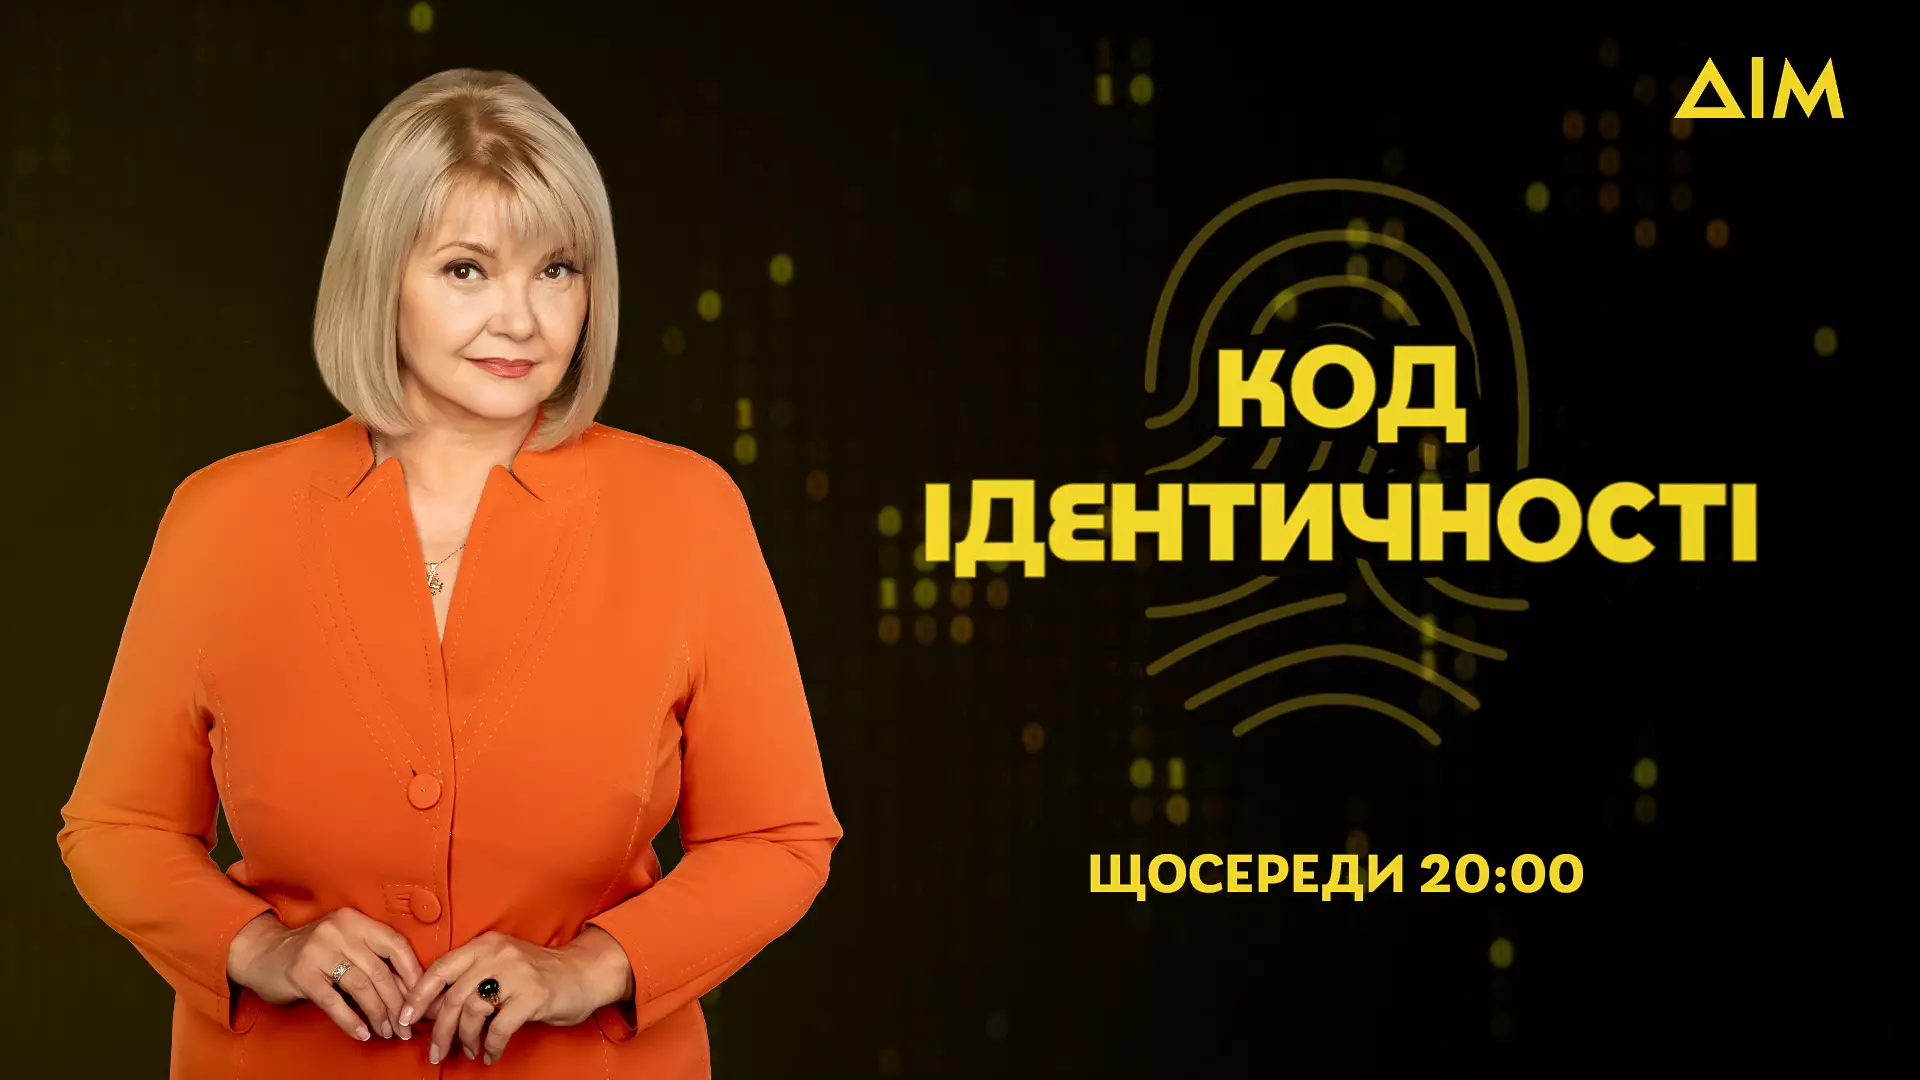 Сьогодні в ефірі каналу «Дім» — прем'єра телепроєкту «Код ідентичності» зі Світланою Леонтьєвою